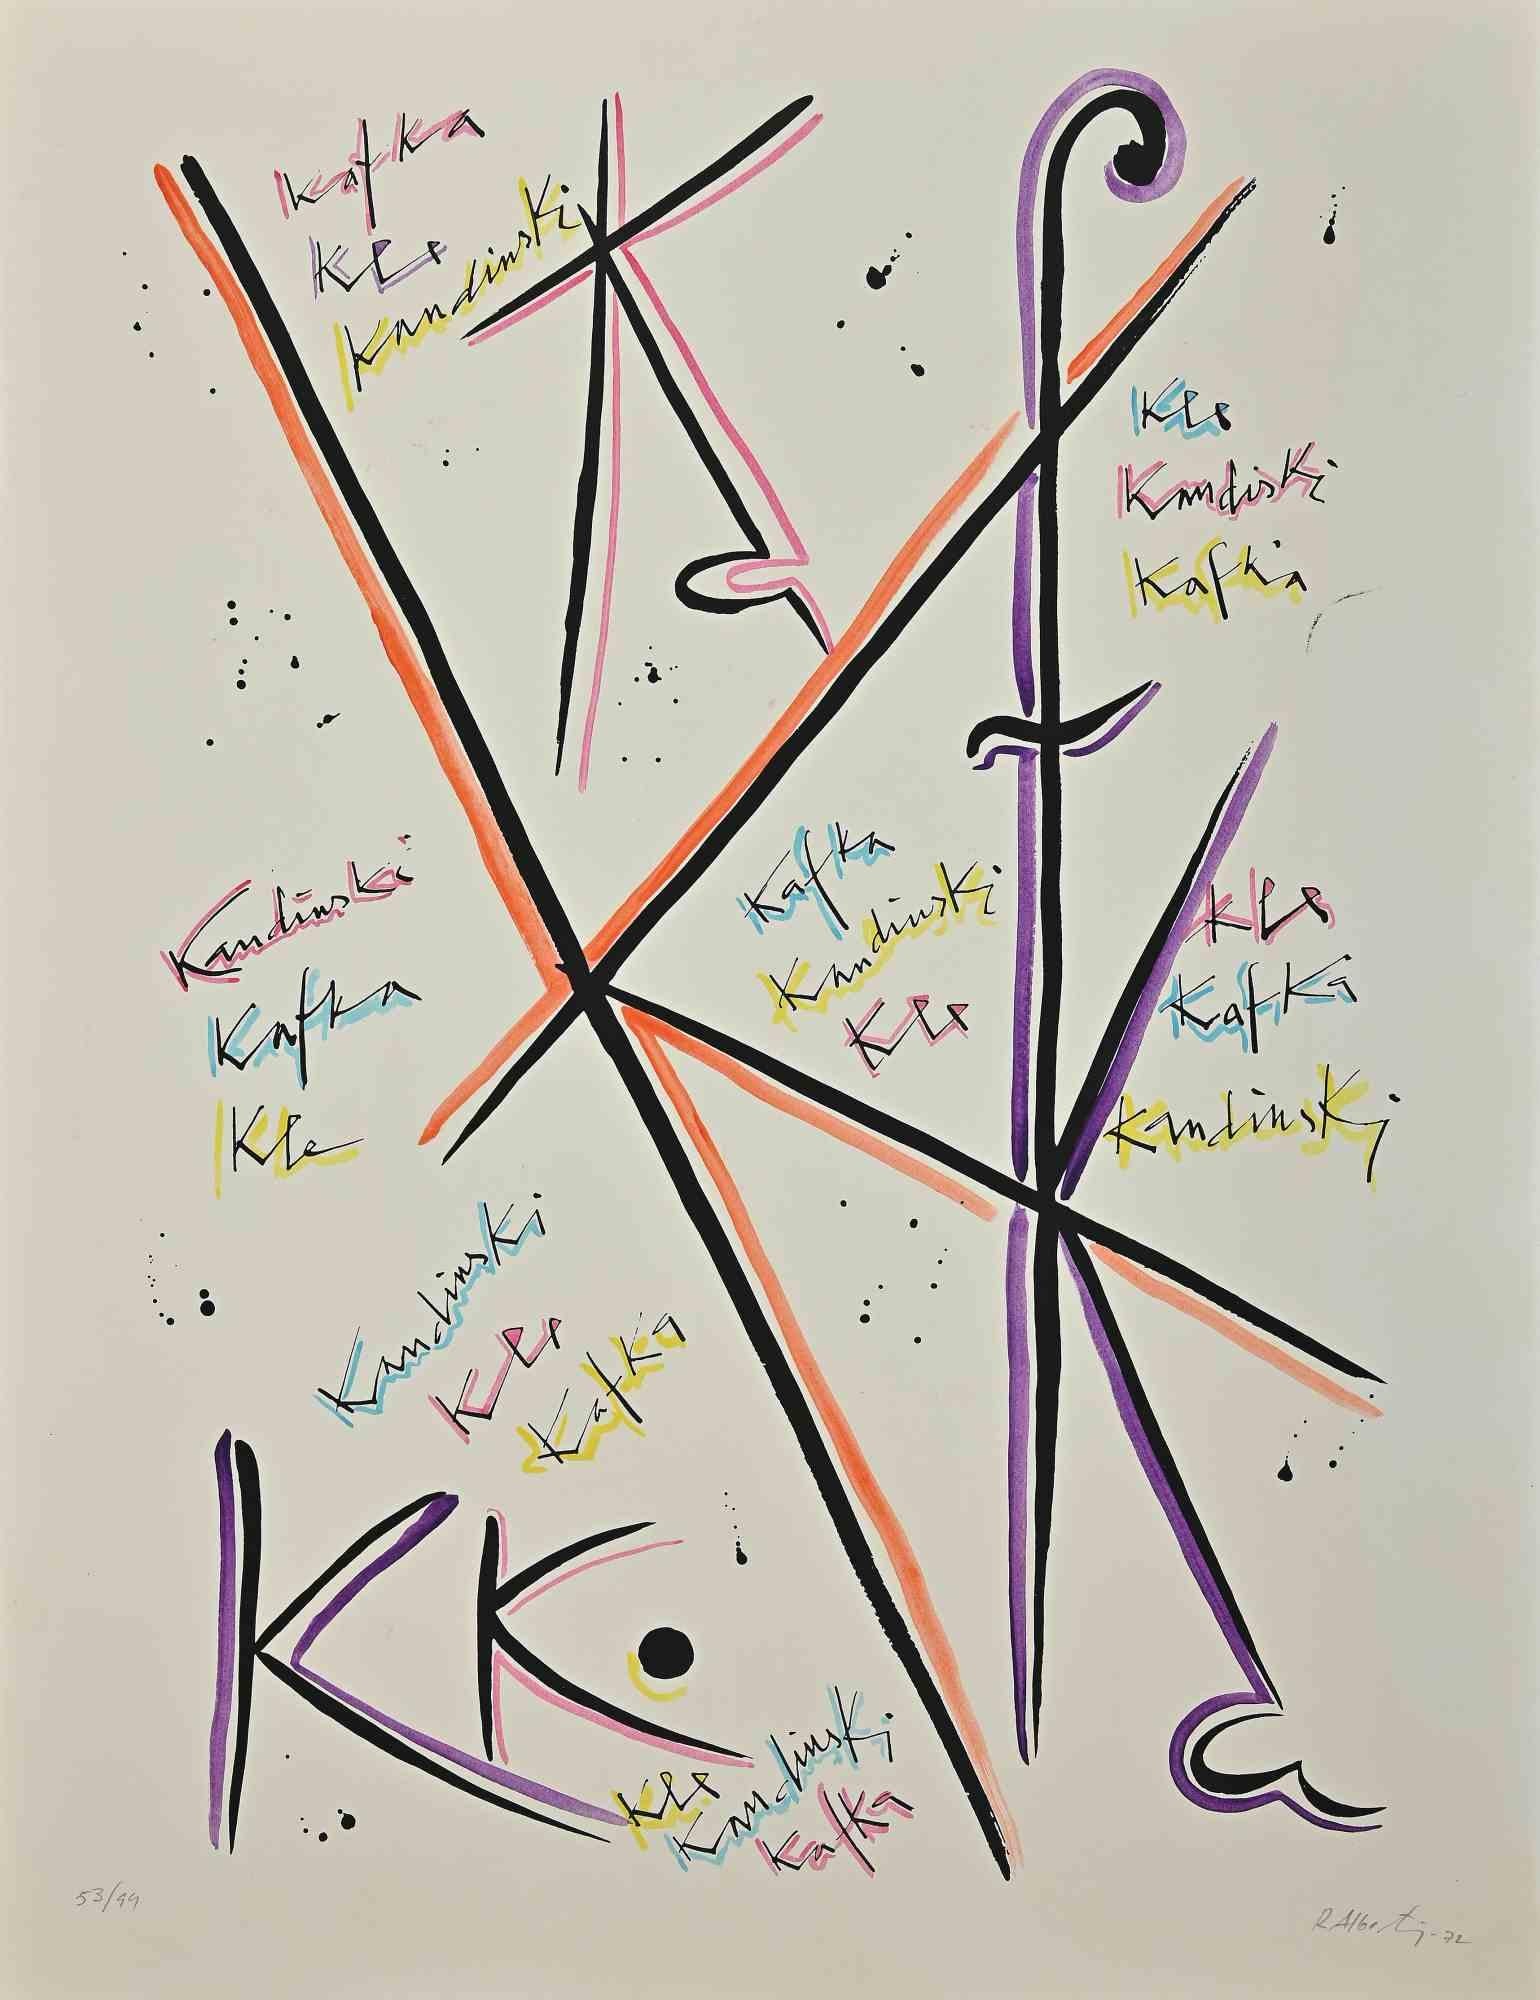 La lettre K de la série Alphabet est une lithographie réalisée par Rafael Alberti en 1972.

Signé à la main en bas à droite.

Numérotée, édition 53/99.

L'état de conservation est bon.

L'œuvre représente la lettre de l'alphabet, avec une